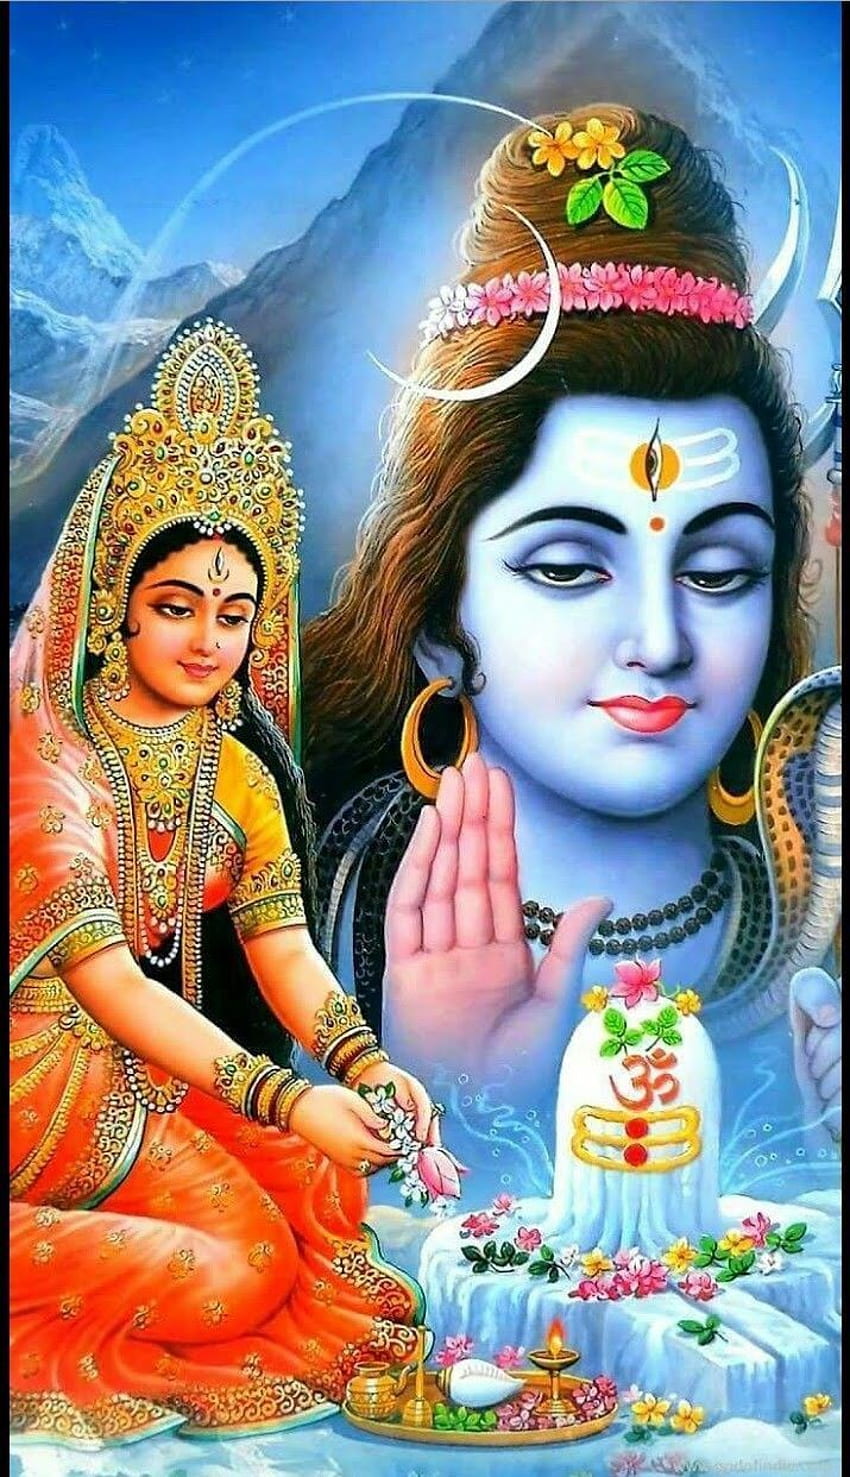 Shiva Parvati (2019) Love Marriage Pics. Feliz Año Nuevo 2020 (, Citas, Deseos, Shiva parvati, Shiva, Lord rama, Shankar Parvati fondo de pantalla del teléfono